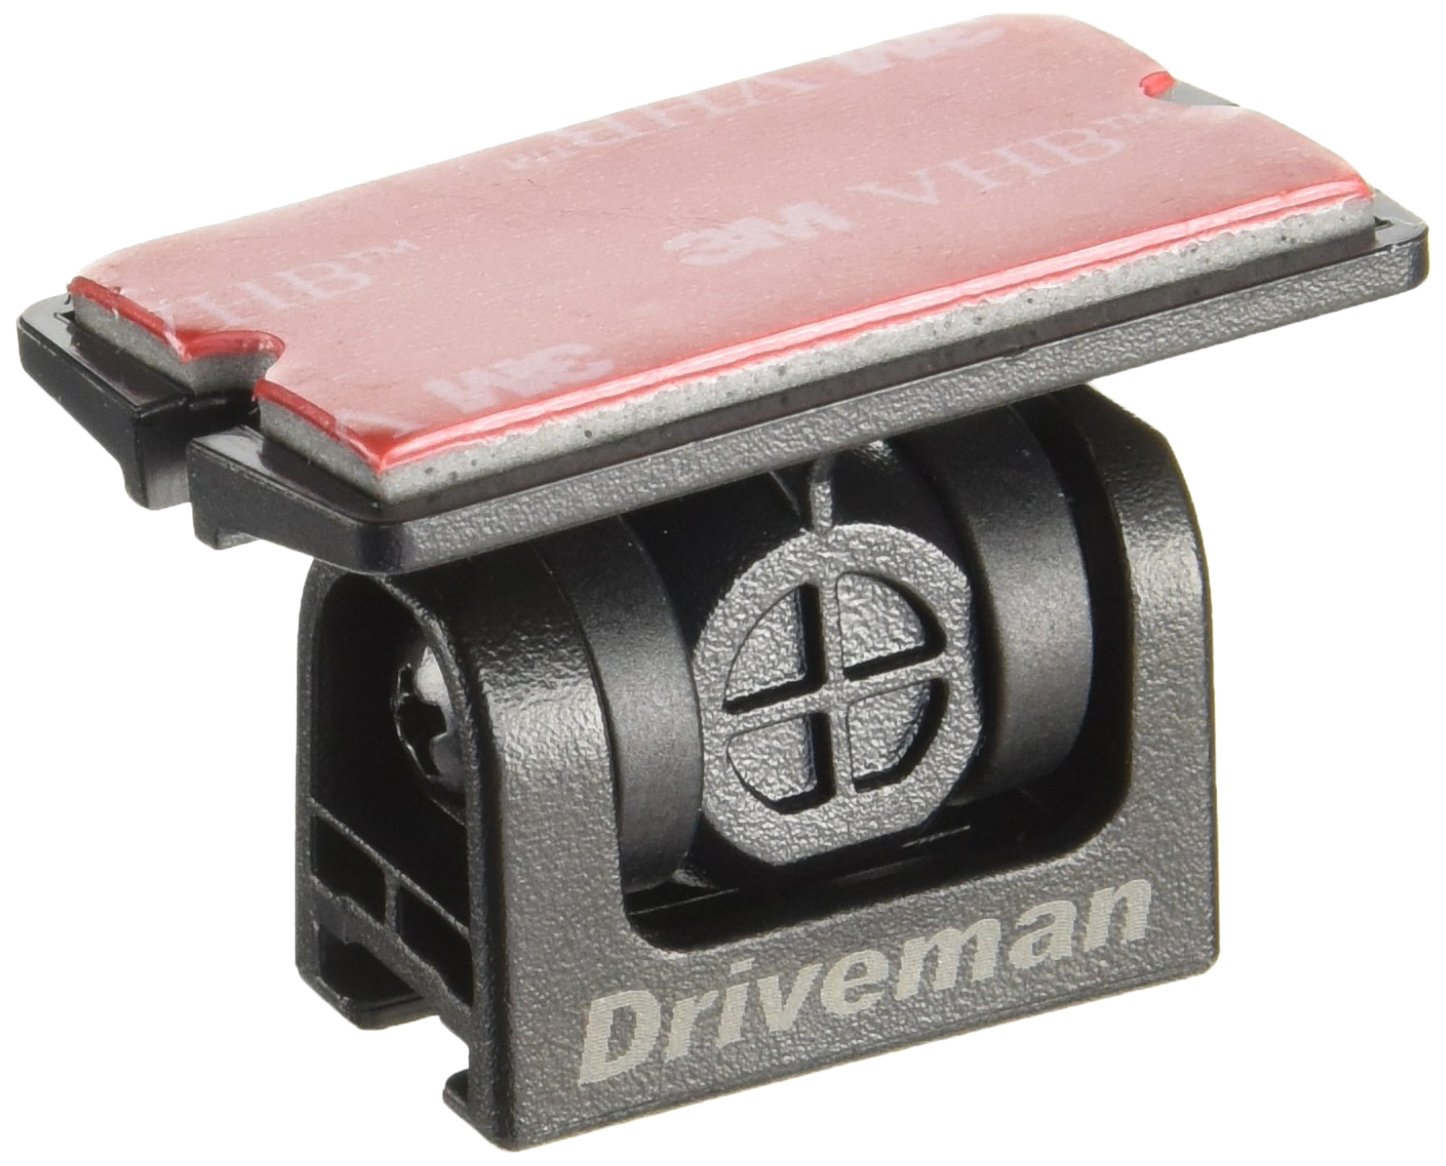 アサヒリサーチ Driveman(ドライブマン) 720/1080/GS/αシリーズ用可変ブラケット 品番 720ROTBR